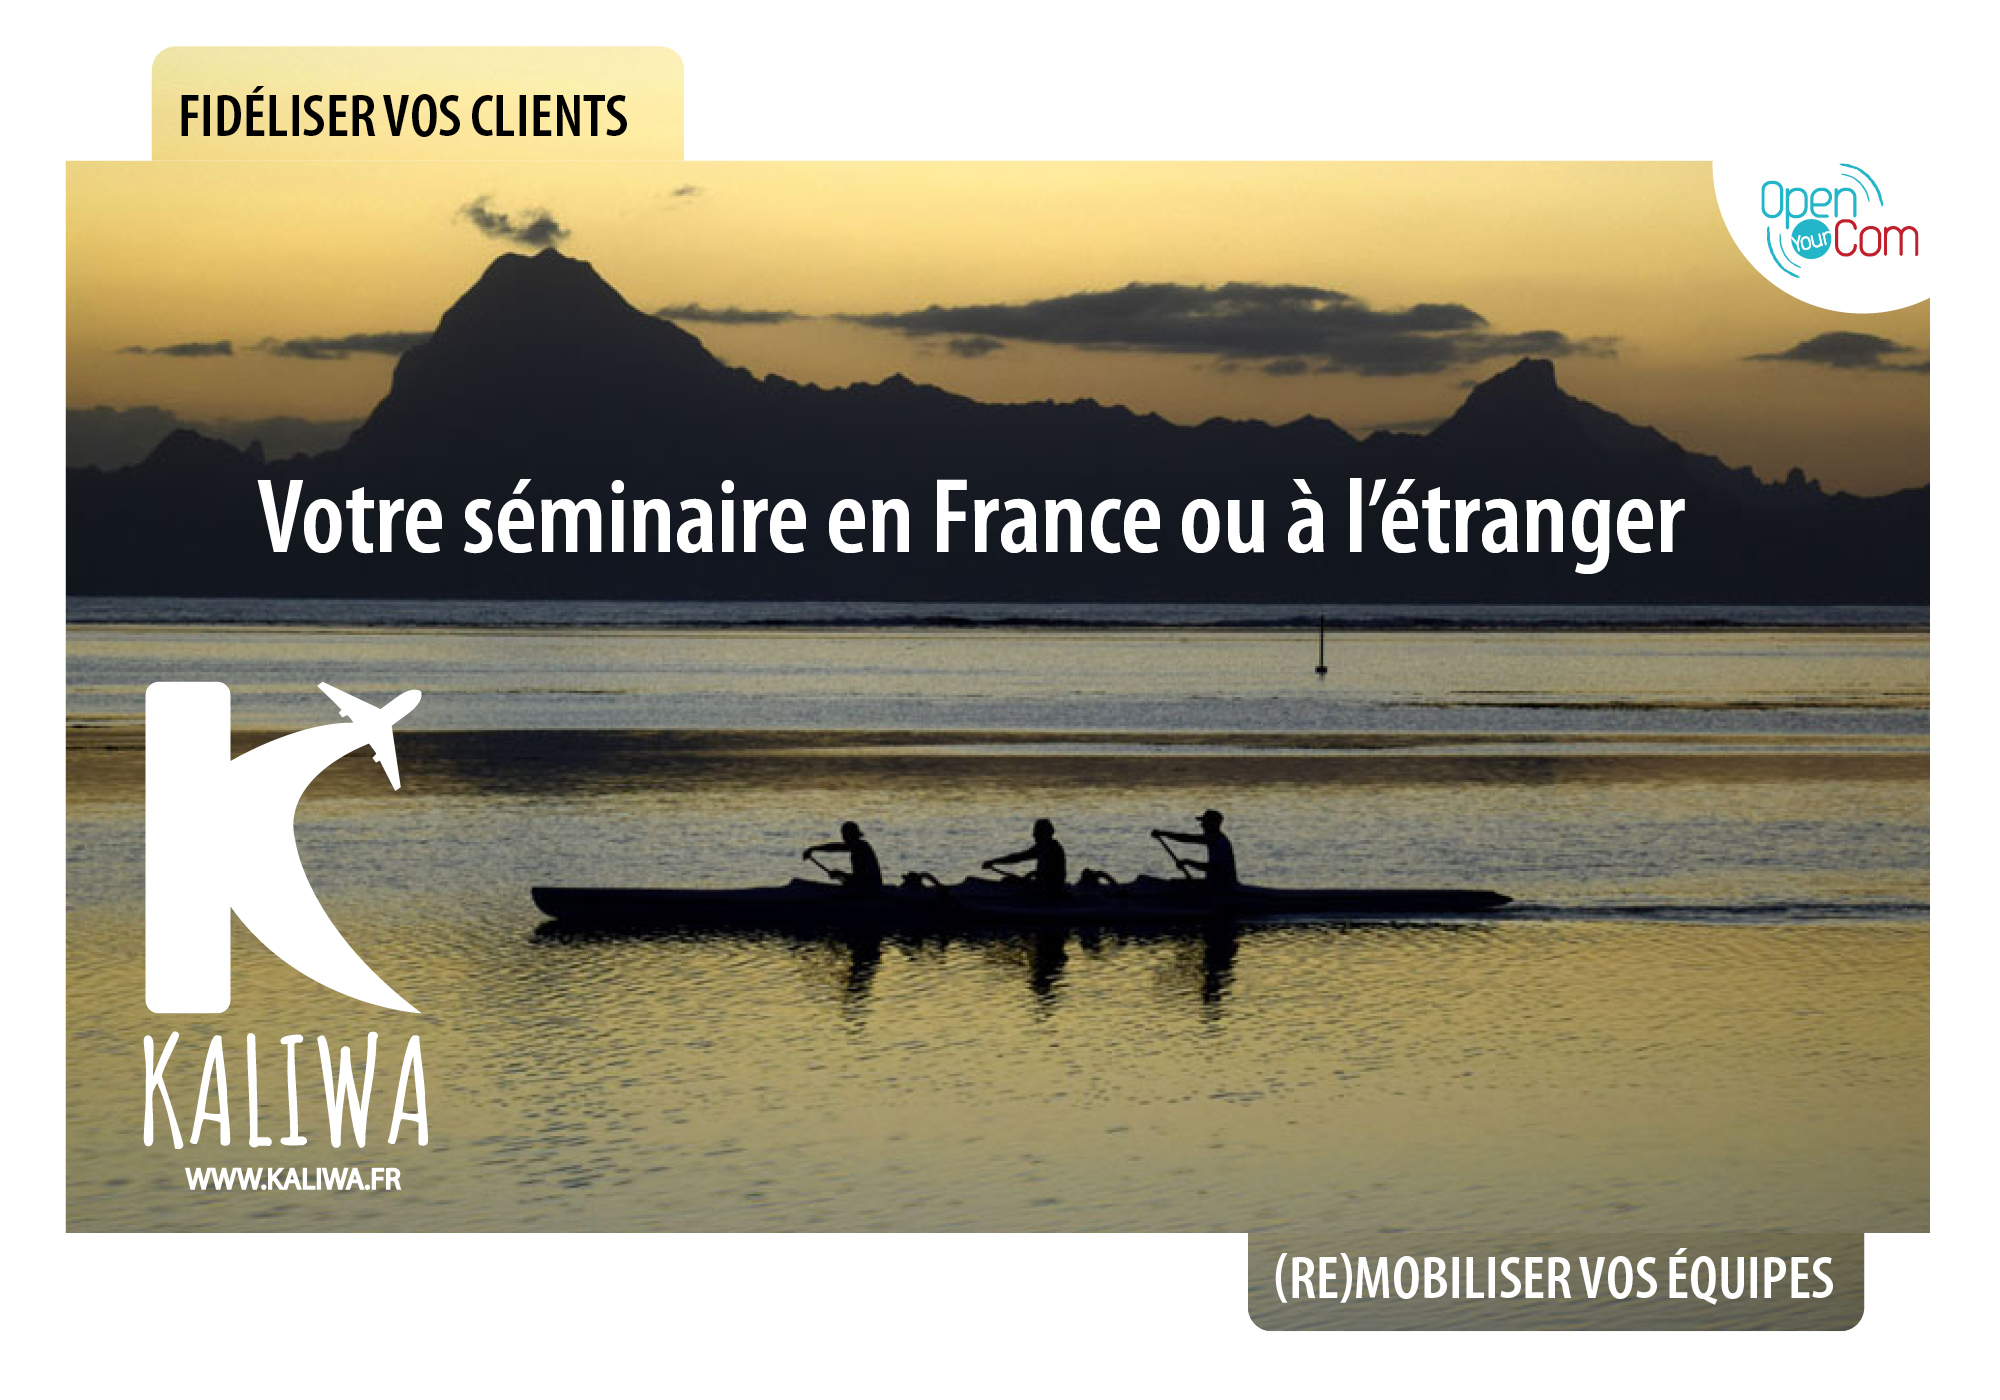 Open Your Com et Kaliwa pour vos séminaires en France et à l'étranger